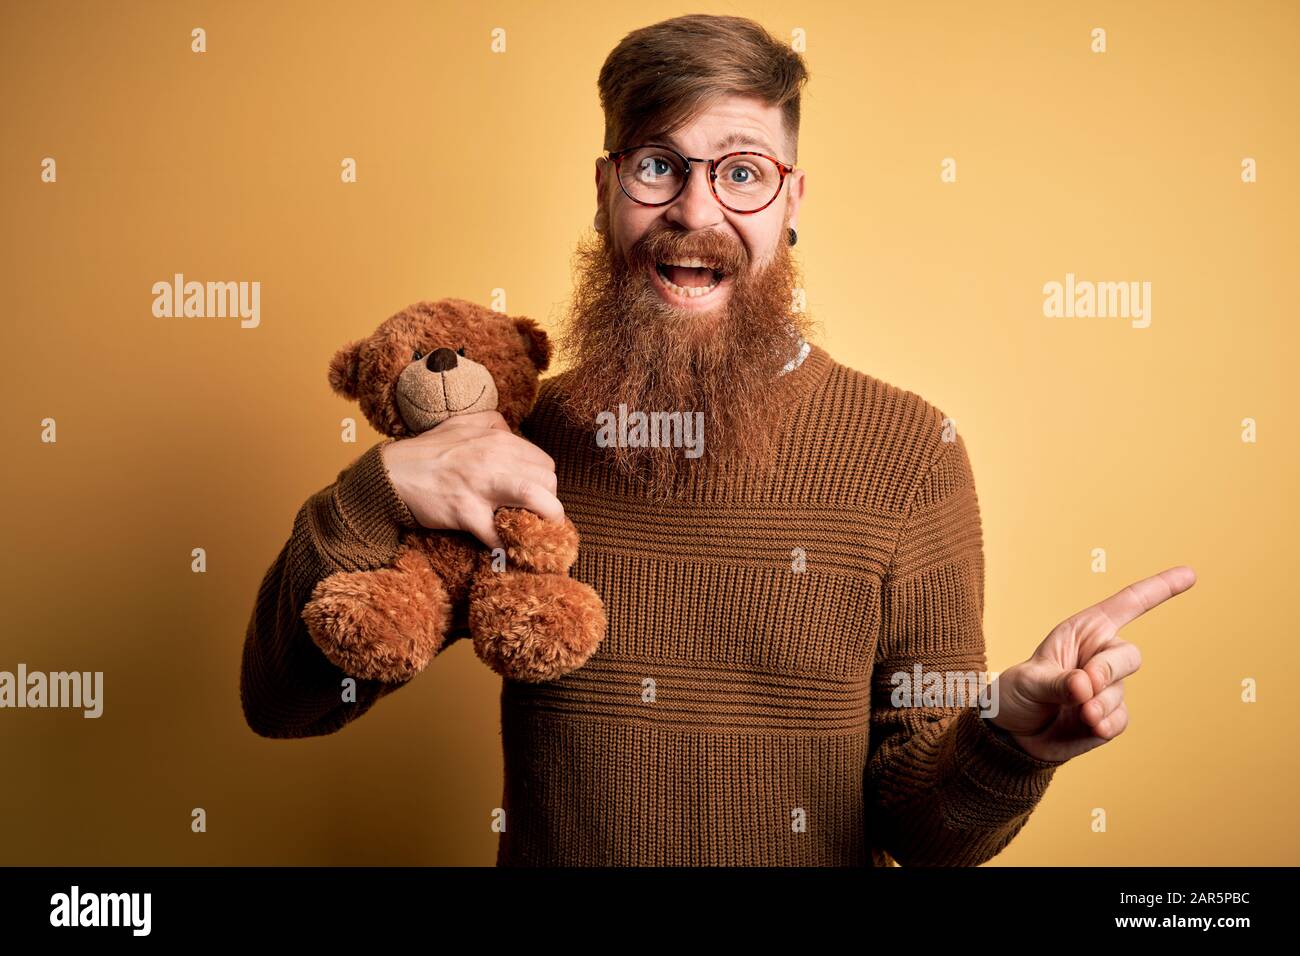 teddy bear with a beard